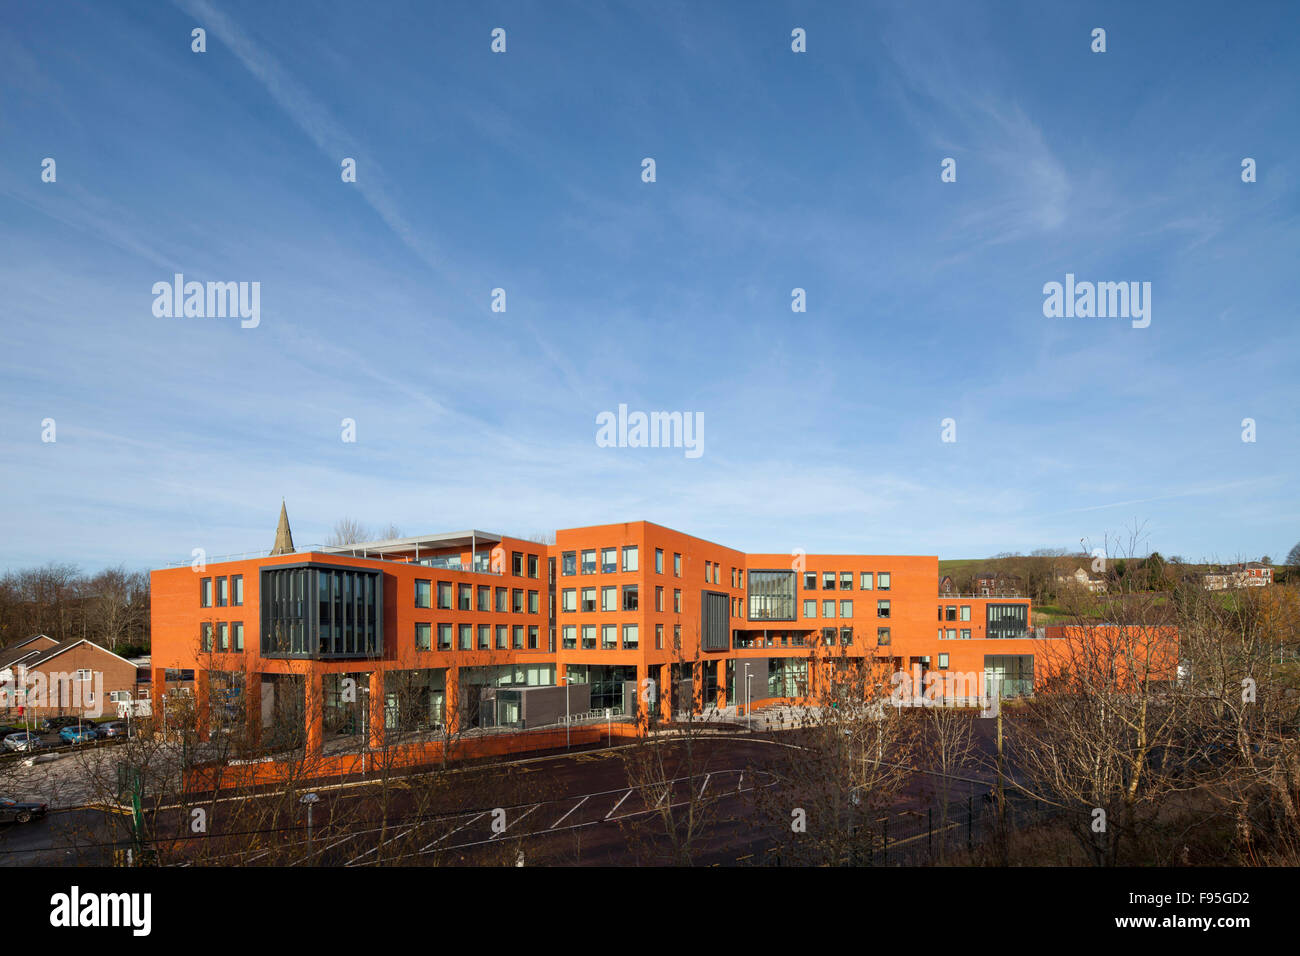 Waterhead Academia, Oldham. Vista lejana del exterior del Waterhead Academy. Foto de stock